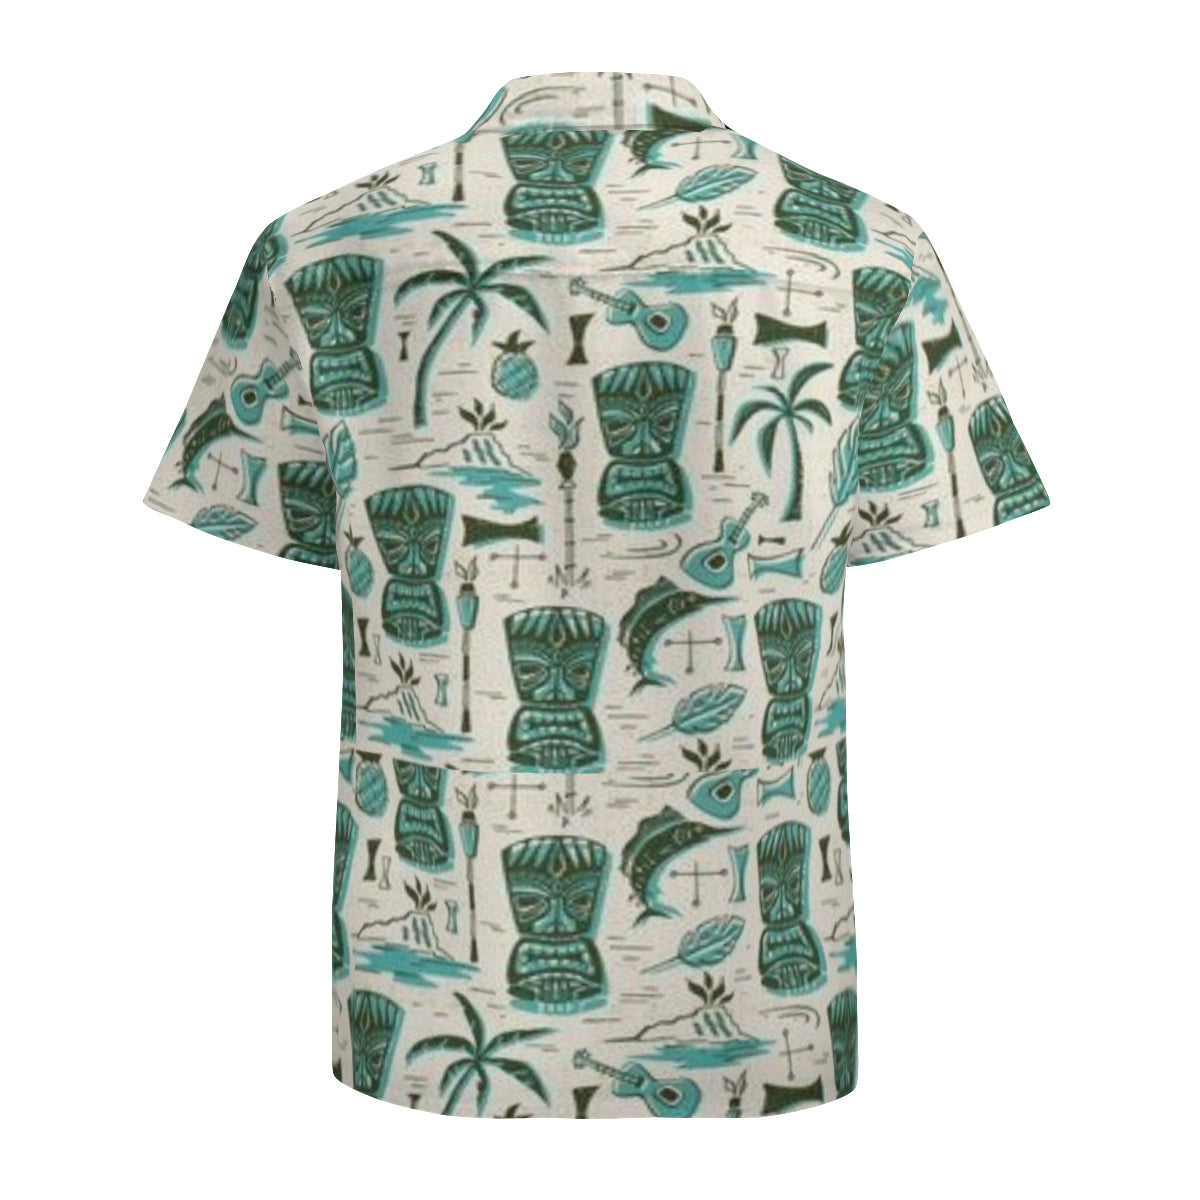 Hawaiian shirt - green tikis